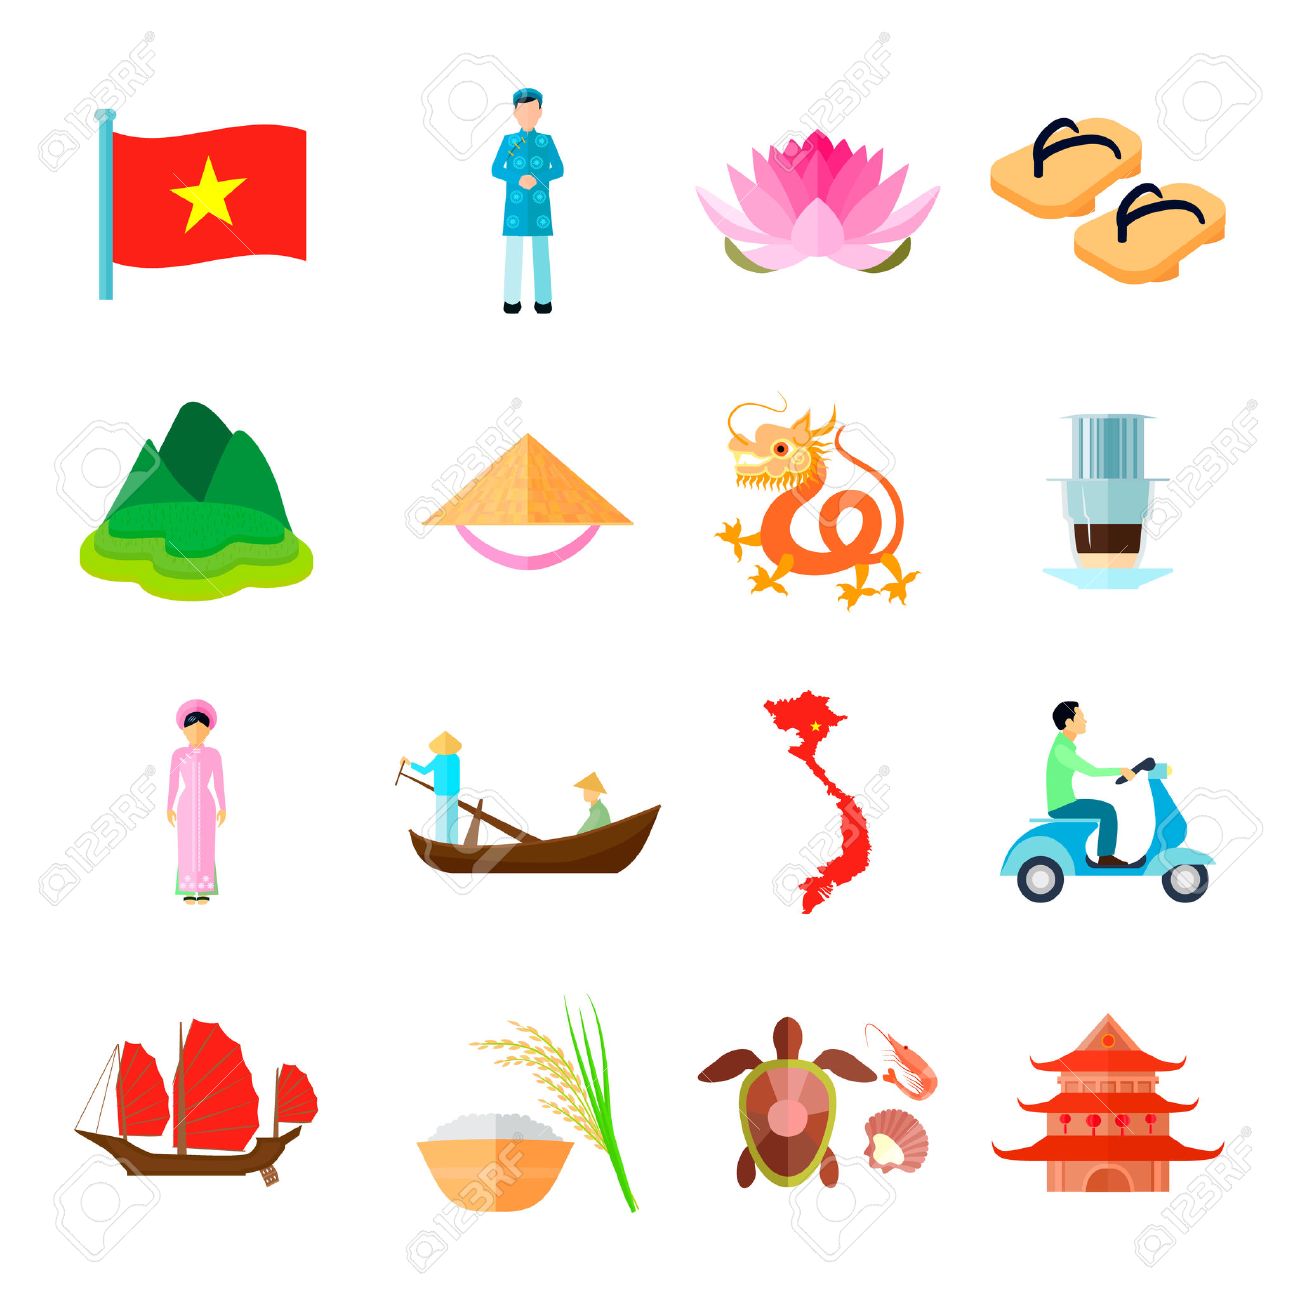 56989935-vietnam-icons-set-vietnam-travel-vector-illustration-vietnam-tourism-flat-symbols-vietnamese-design-.jpg